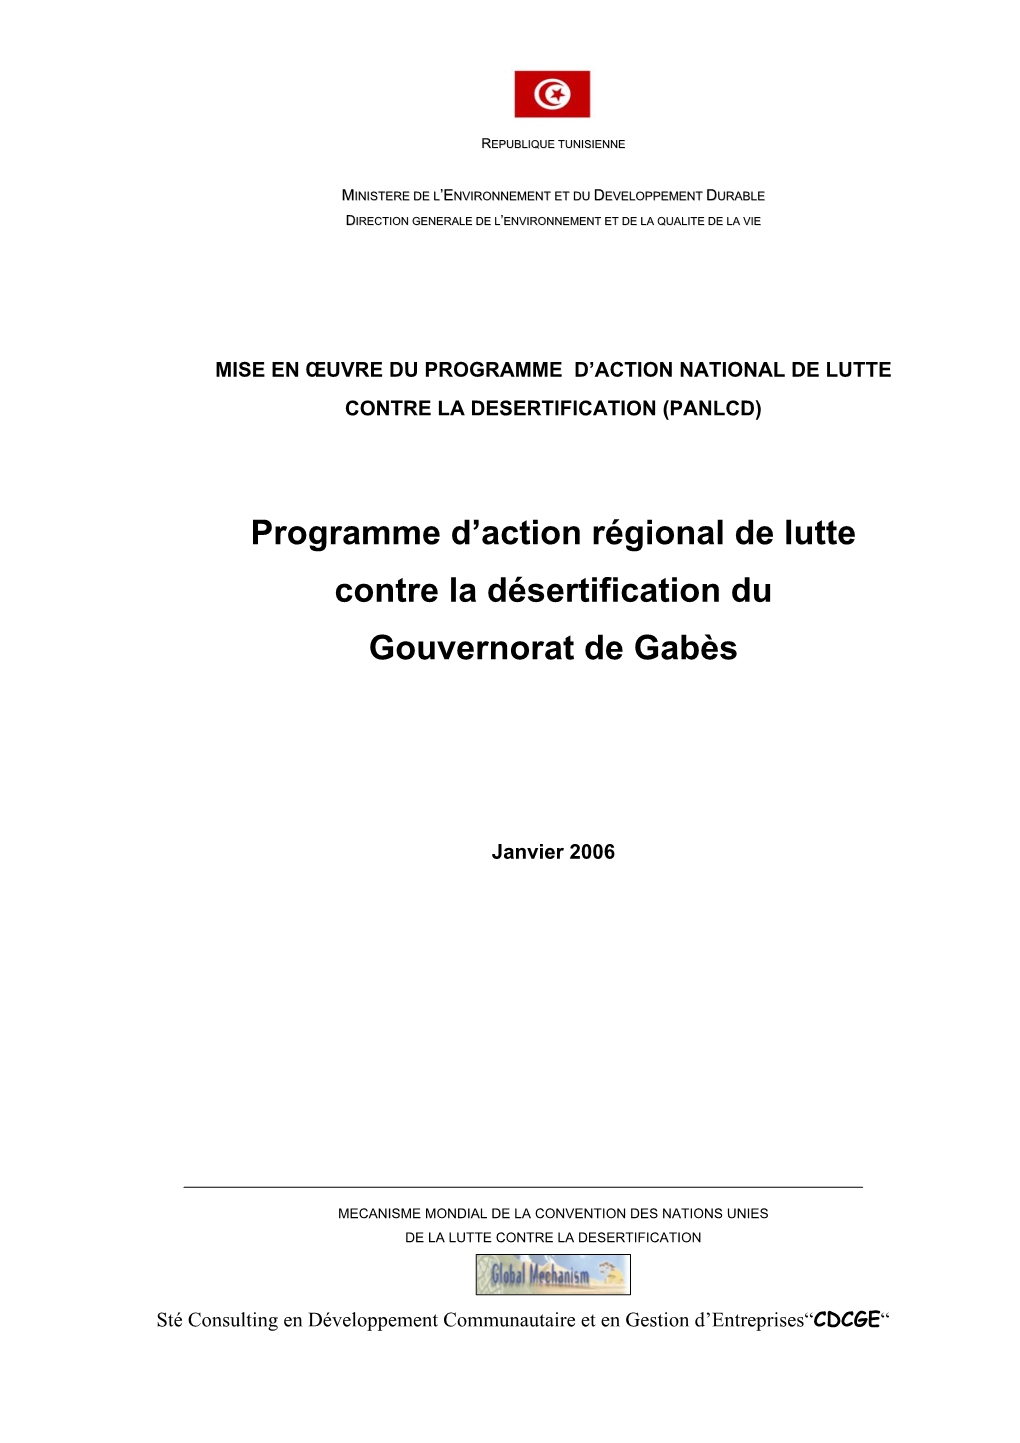 Programme D'action Régional De Lutte Contre La Désertification Du